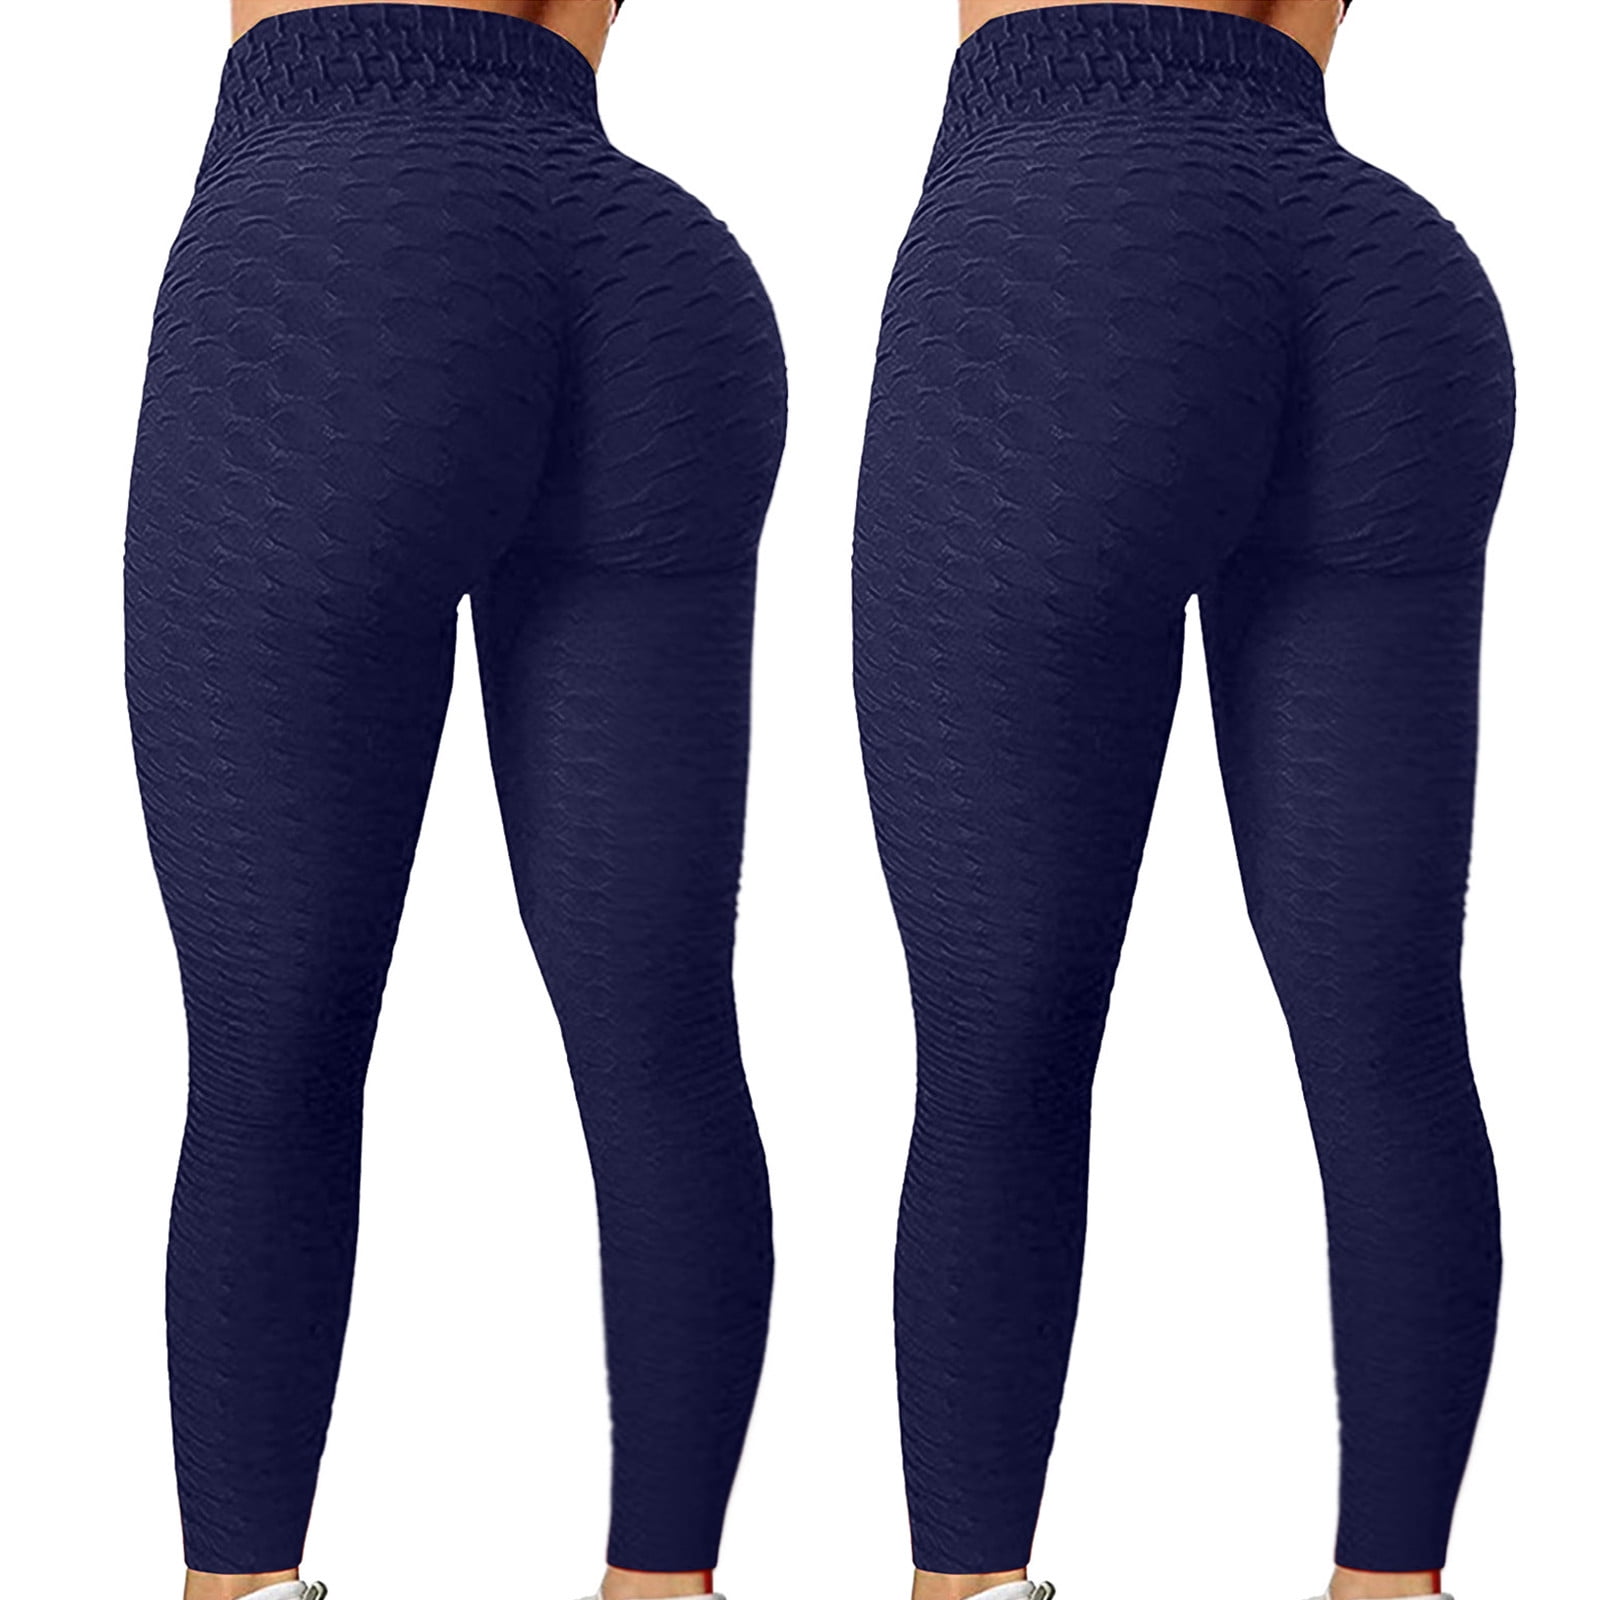 Aayomet Yoga Pants For Women Women's Bootcut Yoga Pants with